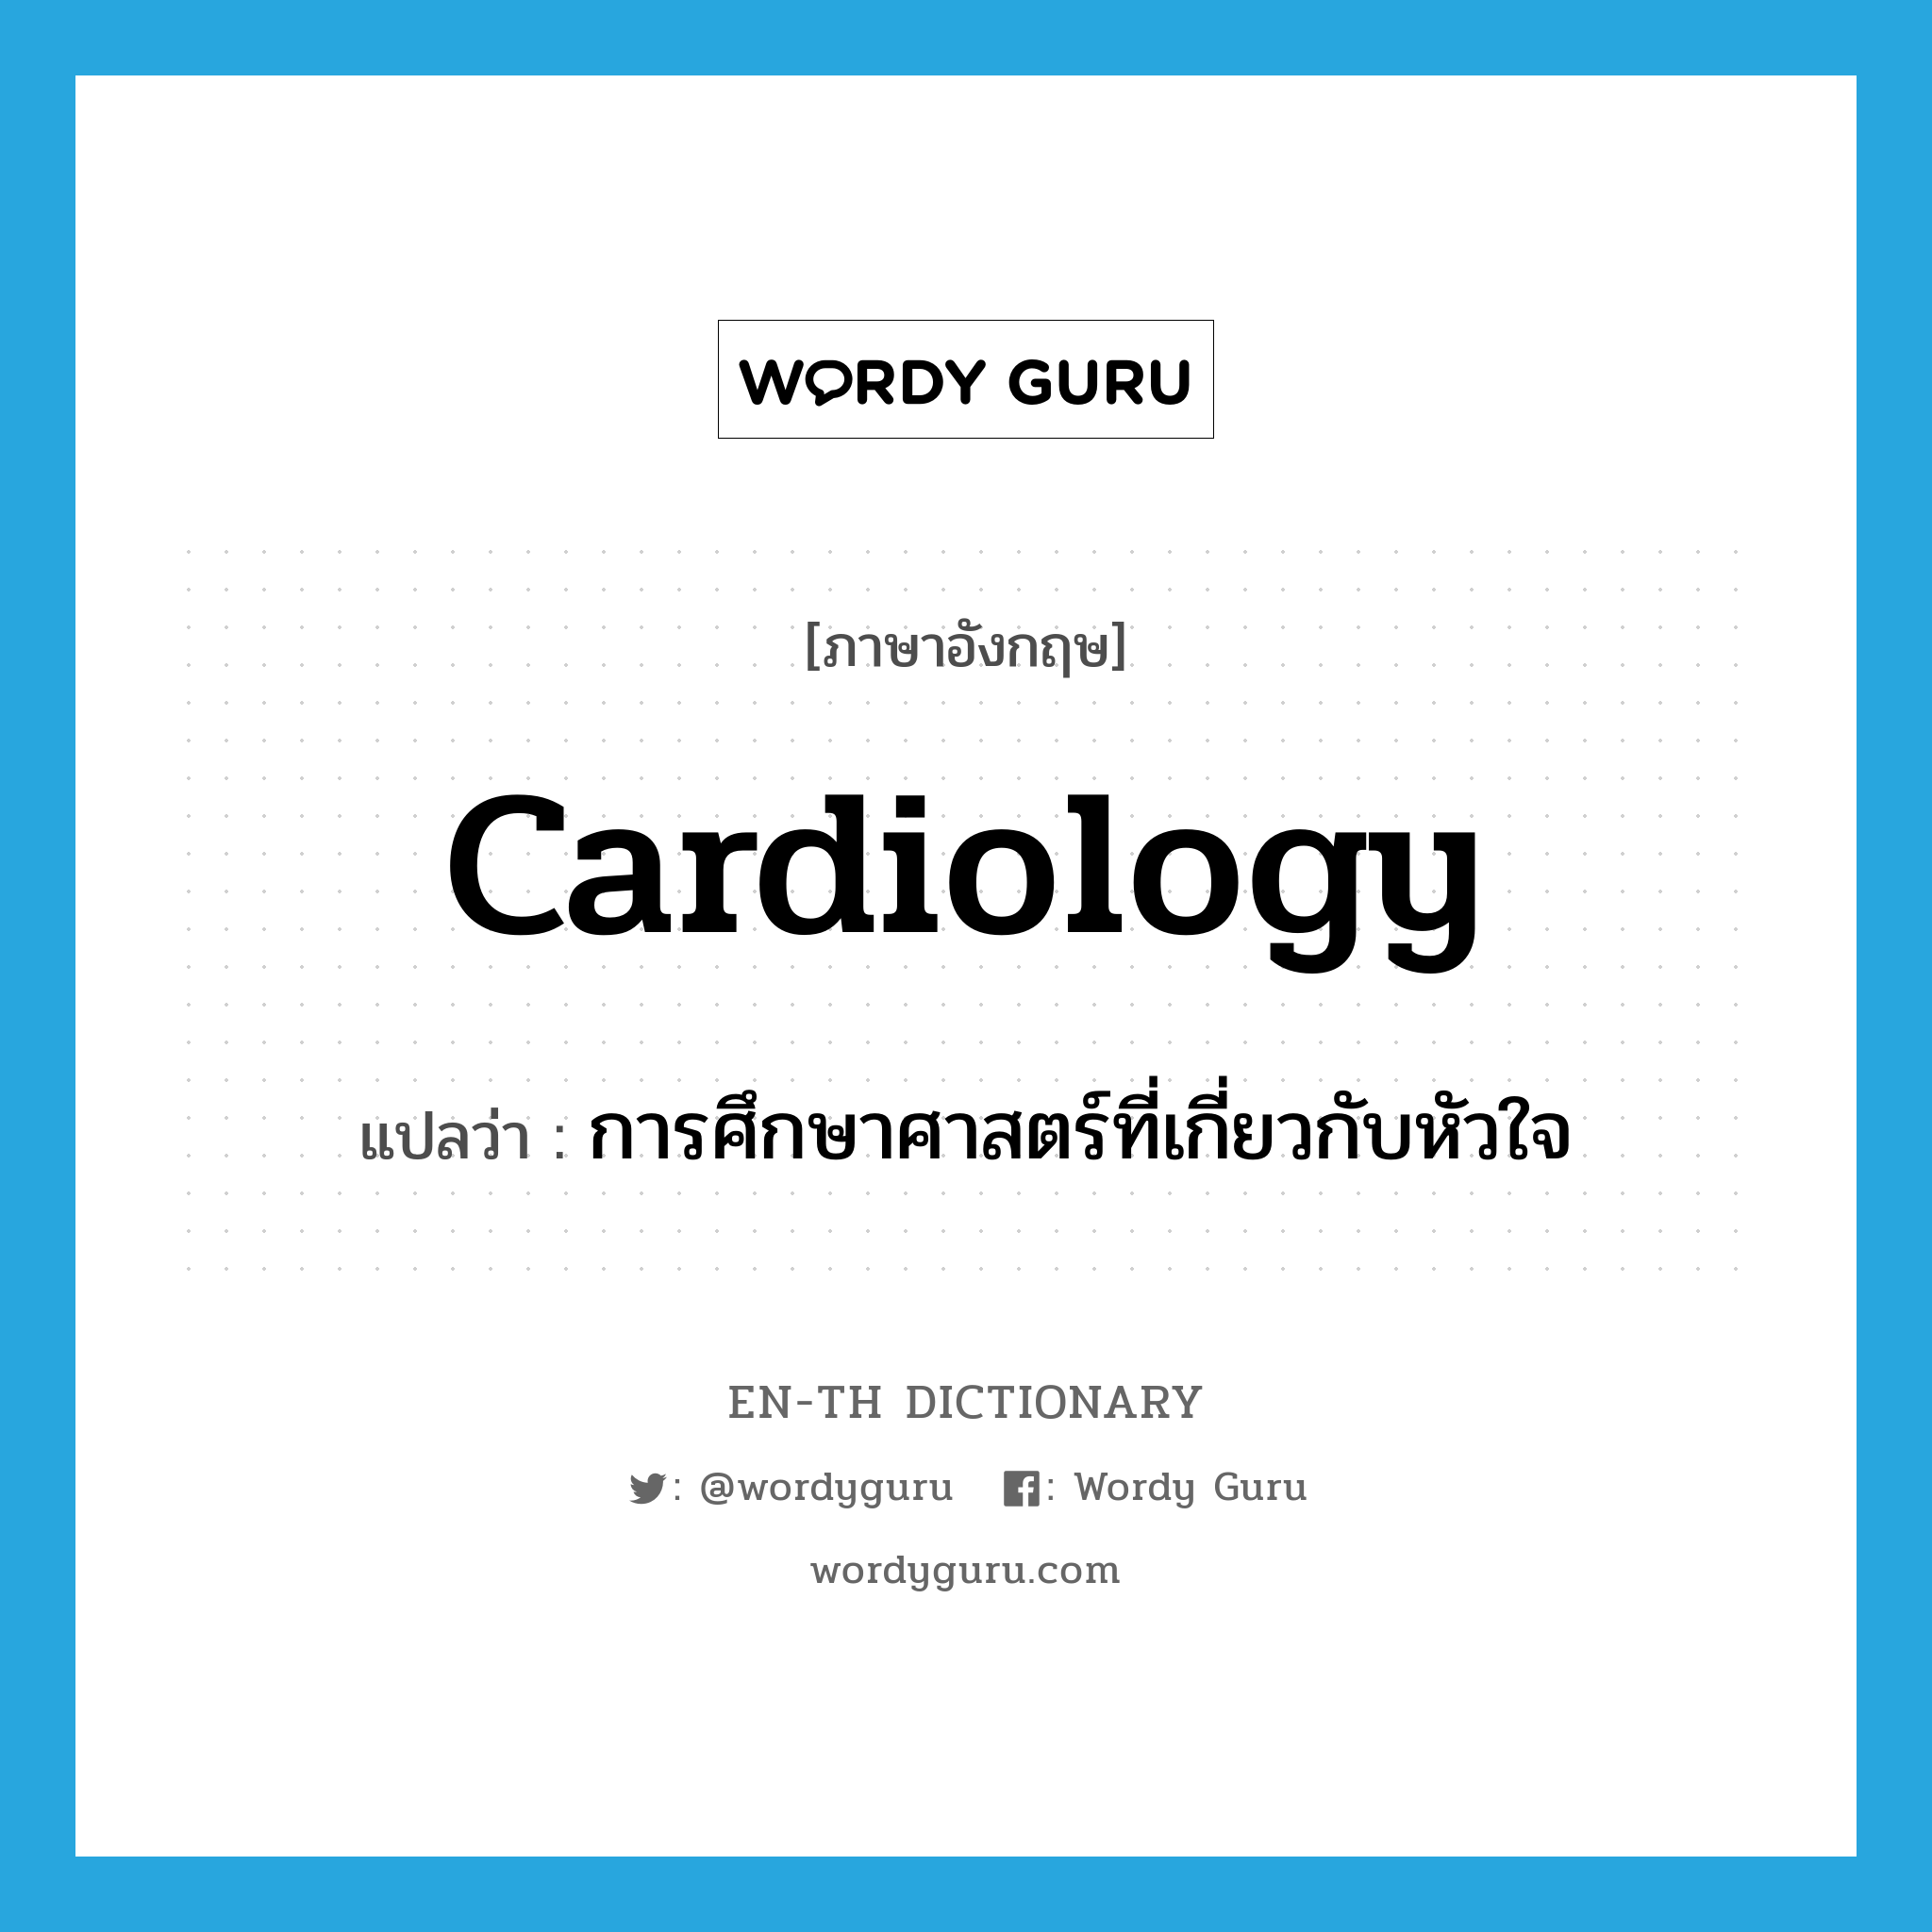 cardiology แปลว่า?, คำศัพท์ภาษาอังกฤษ cardiology แปลว่า การศึกษาศาสตร์ที่เกี่ยวกับหัวใจ ประเภท N หมวด N